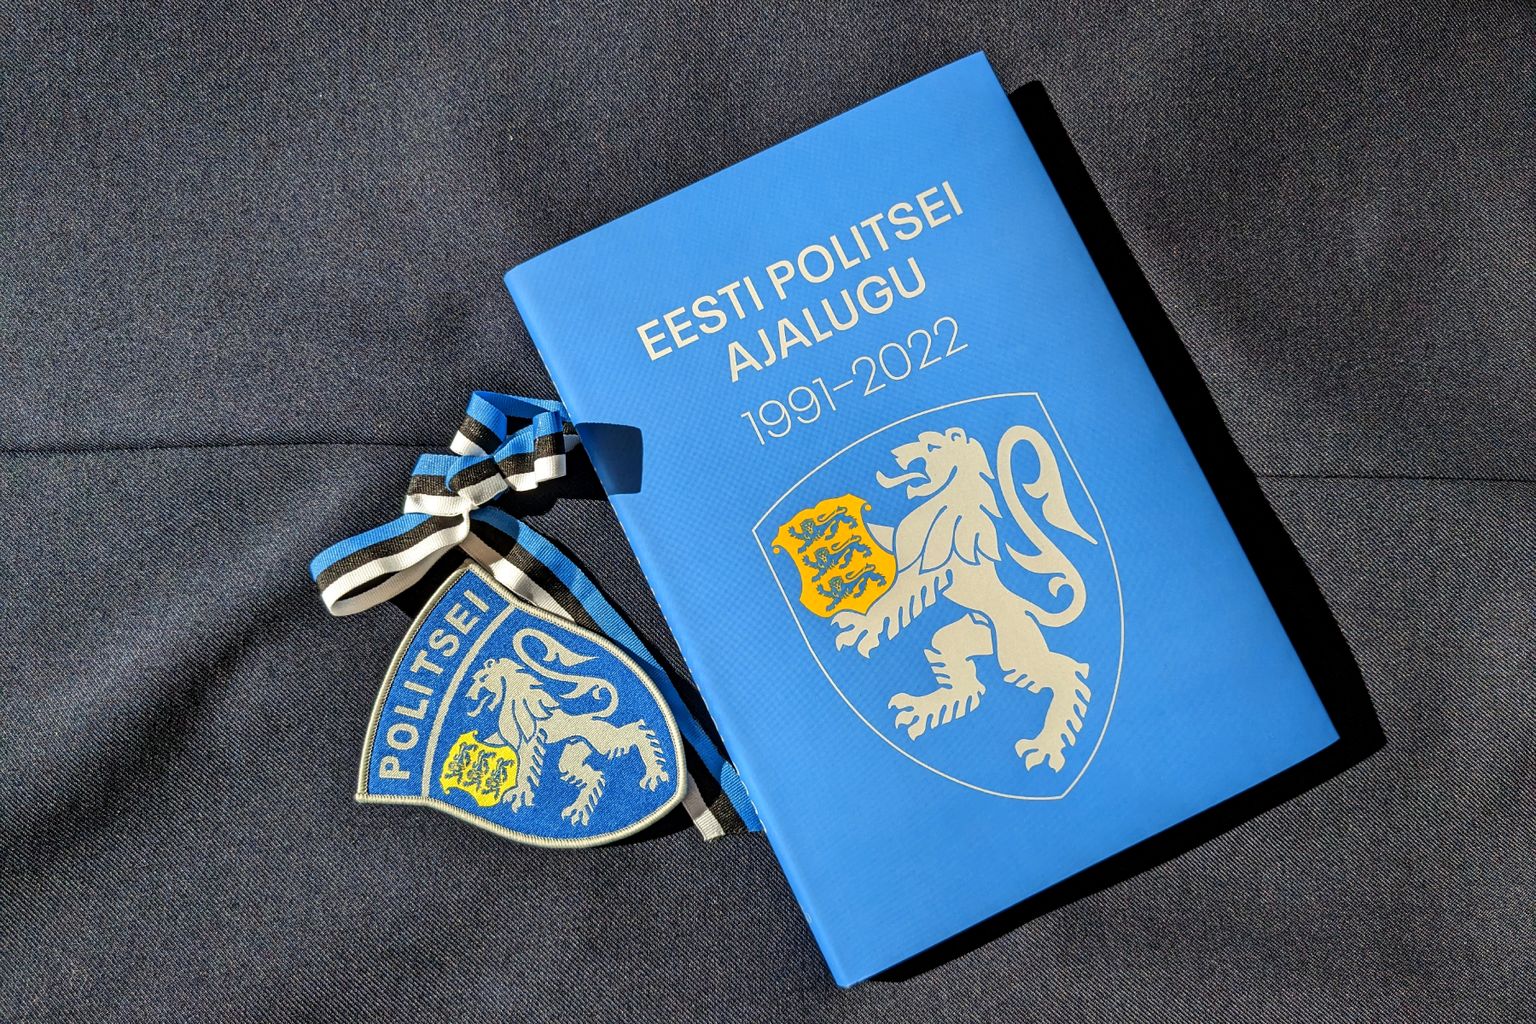 «Eesti politsei ajalugu 1991-2022»